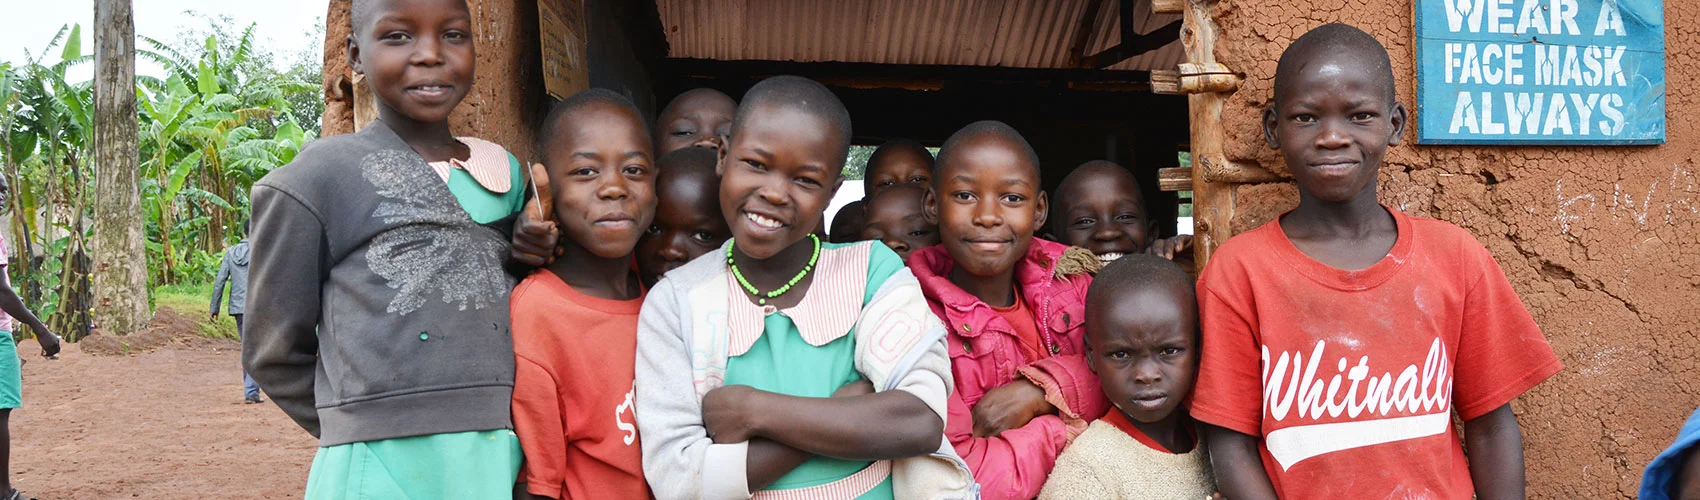 Schulkinder in Uganda